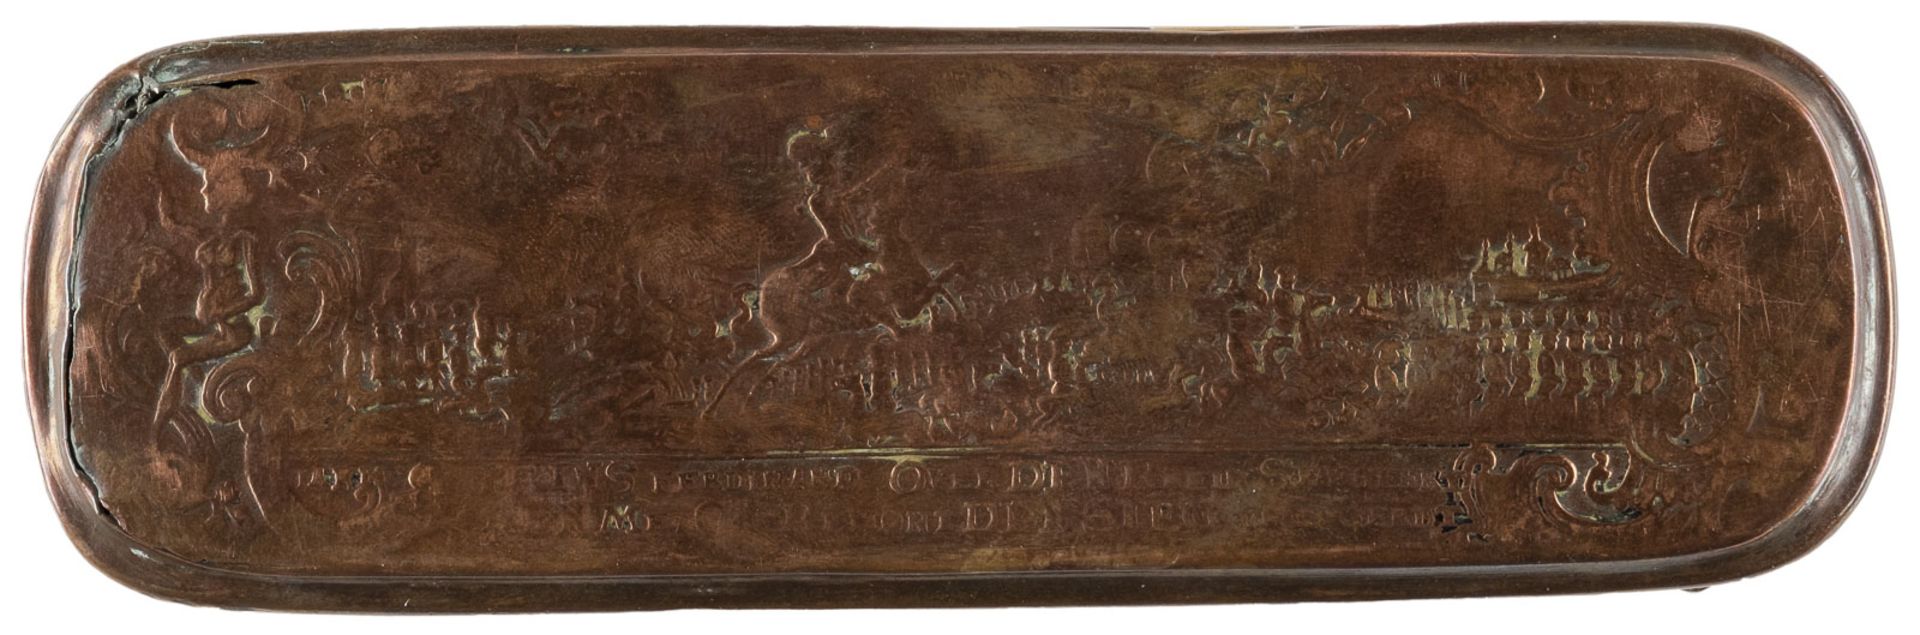 ISERLOHNER TABAKSDOSE MIT 'FERDINAND VON BRAUNSCHWEIG' UND 'SCHLACHT BEI KREFELD 1758' - Bild 3 aus 3